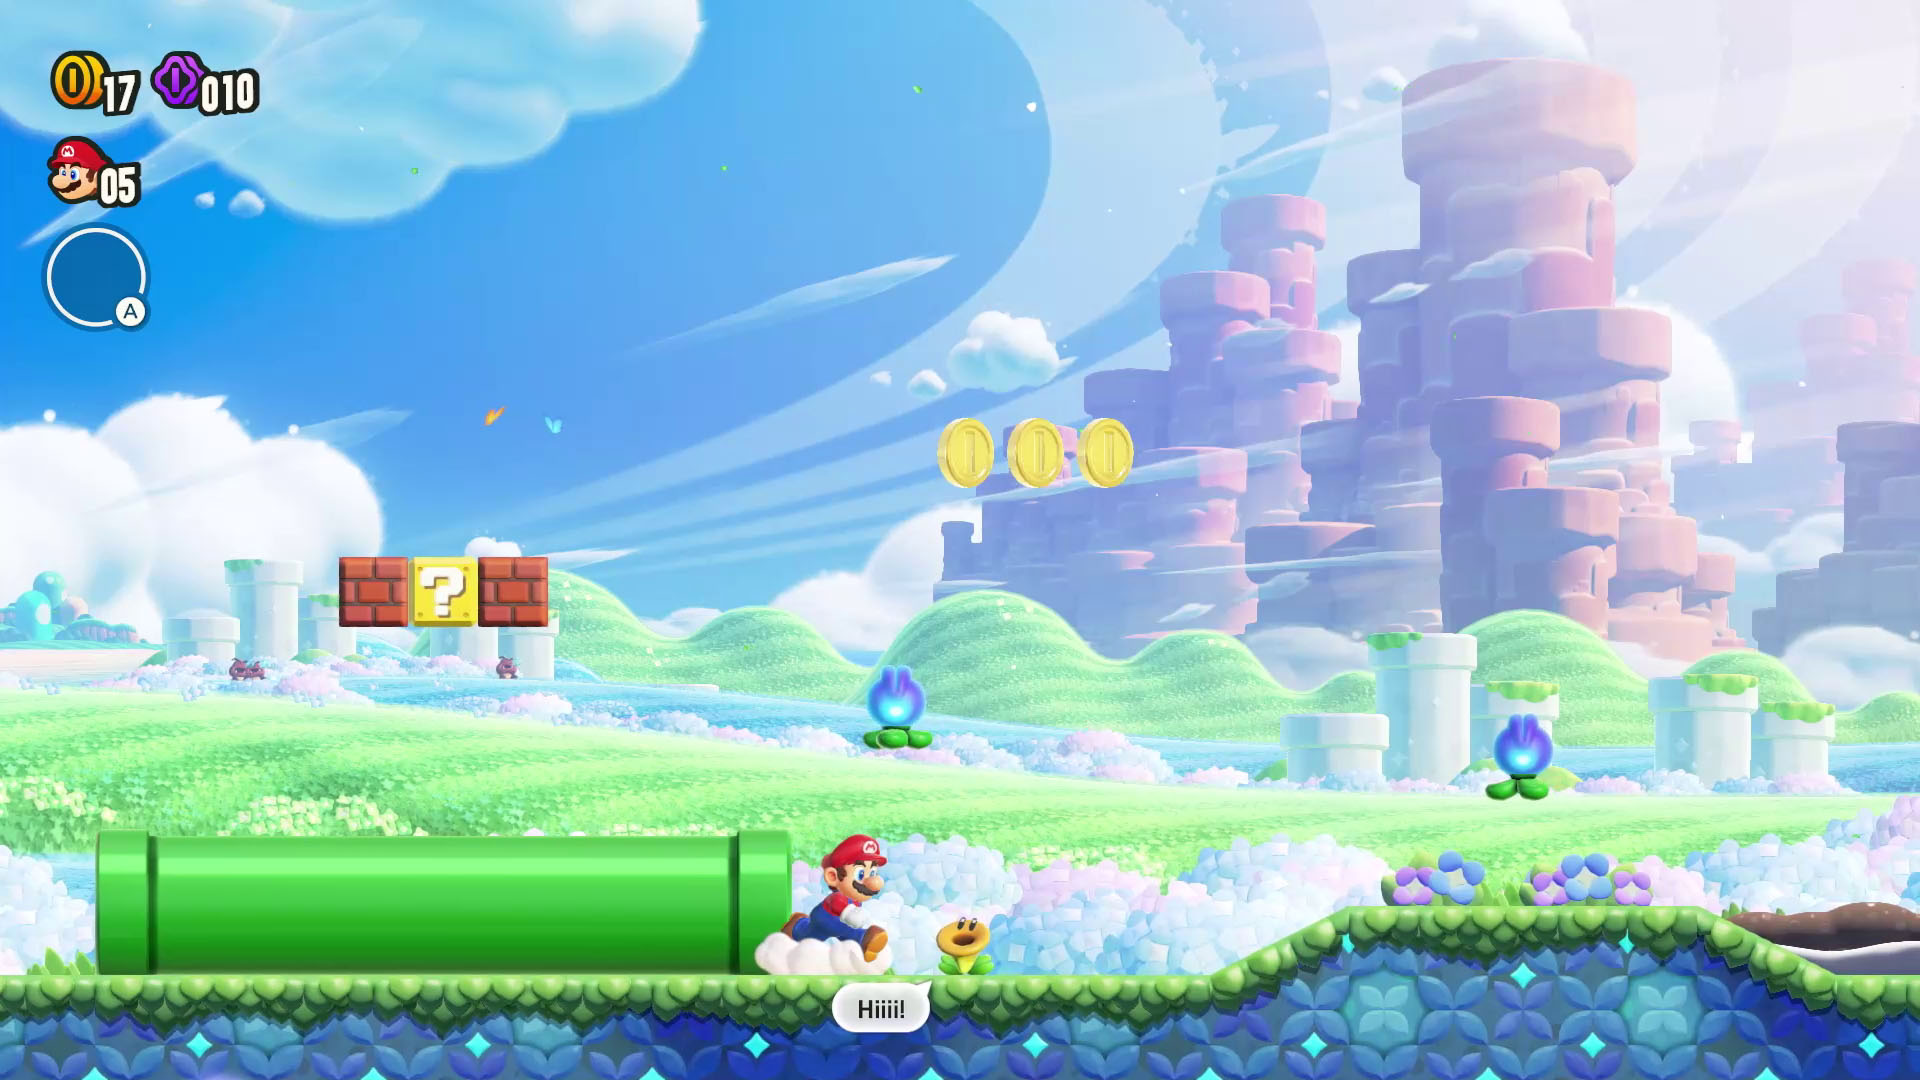 Super Mario Bros. Wonder – Overview Trailer – Nintendo Switch 